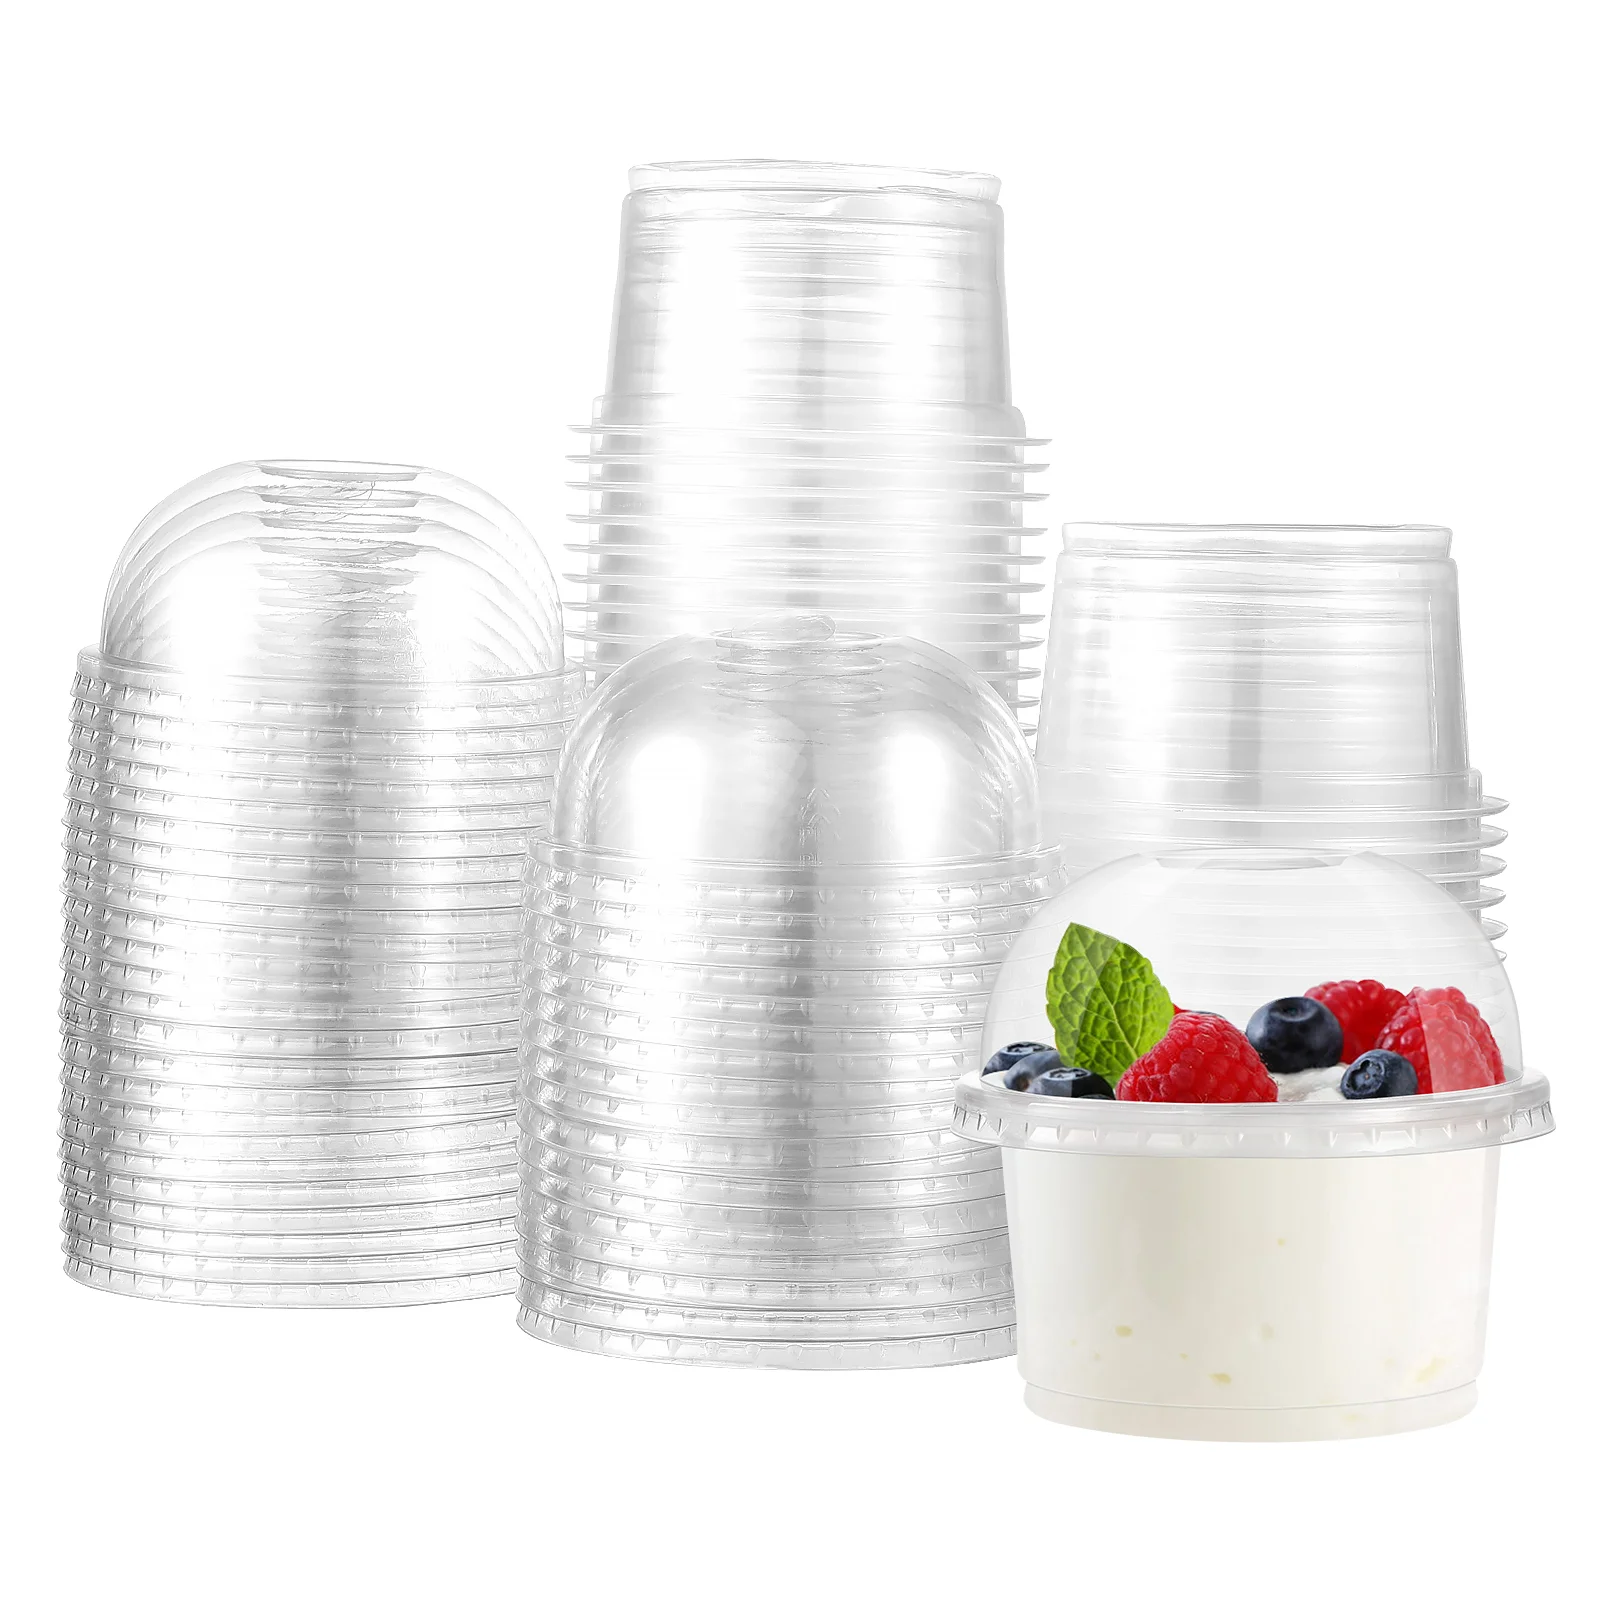 

Cups Lids Clear Parfait Disposable Ice Plastic Cream Bowls Snack Fruit Salad Dessert Dome Mini Party